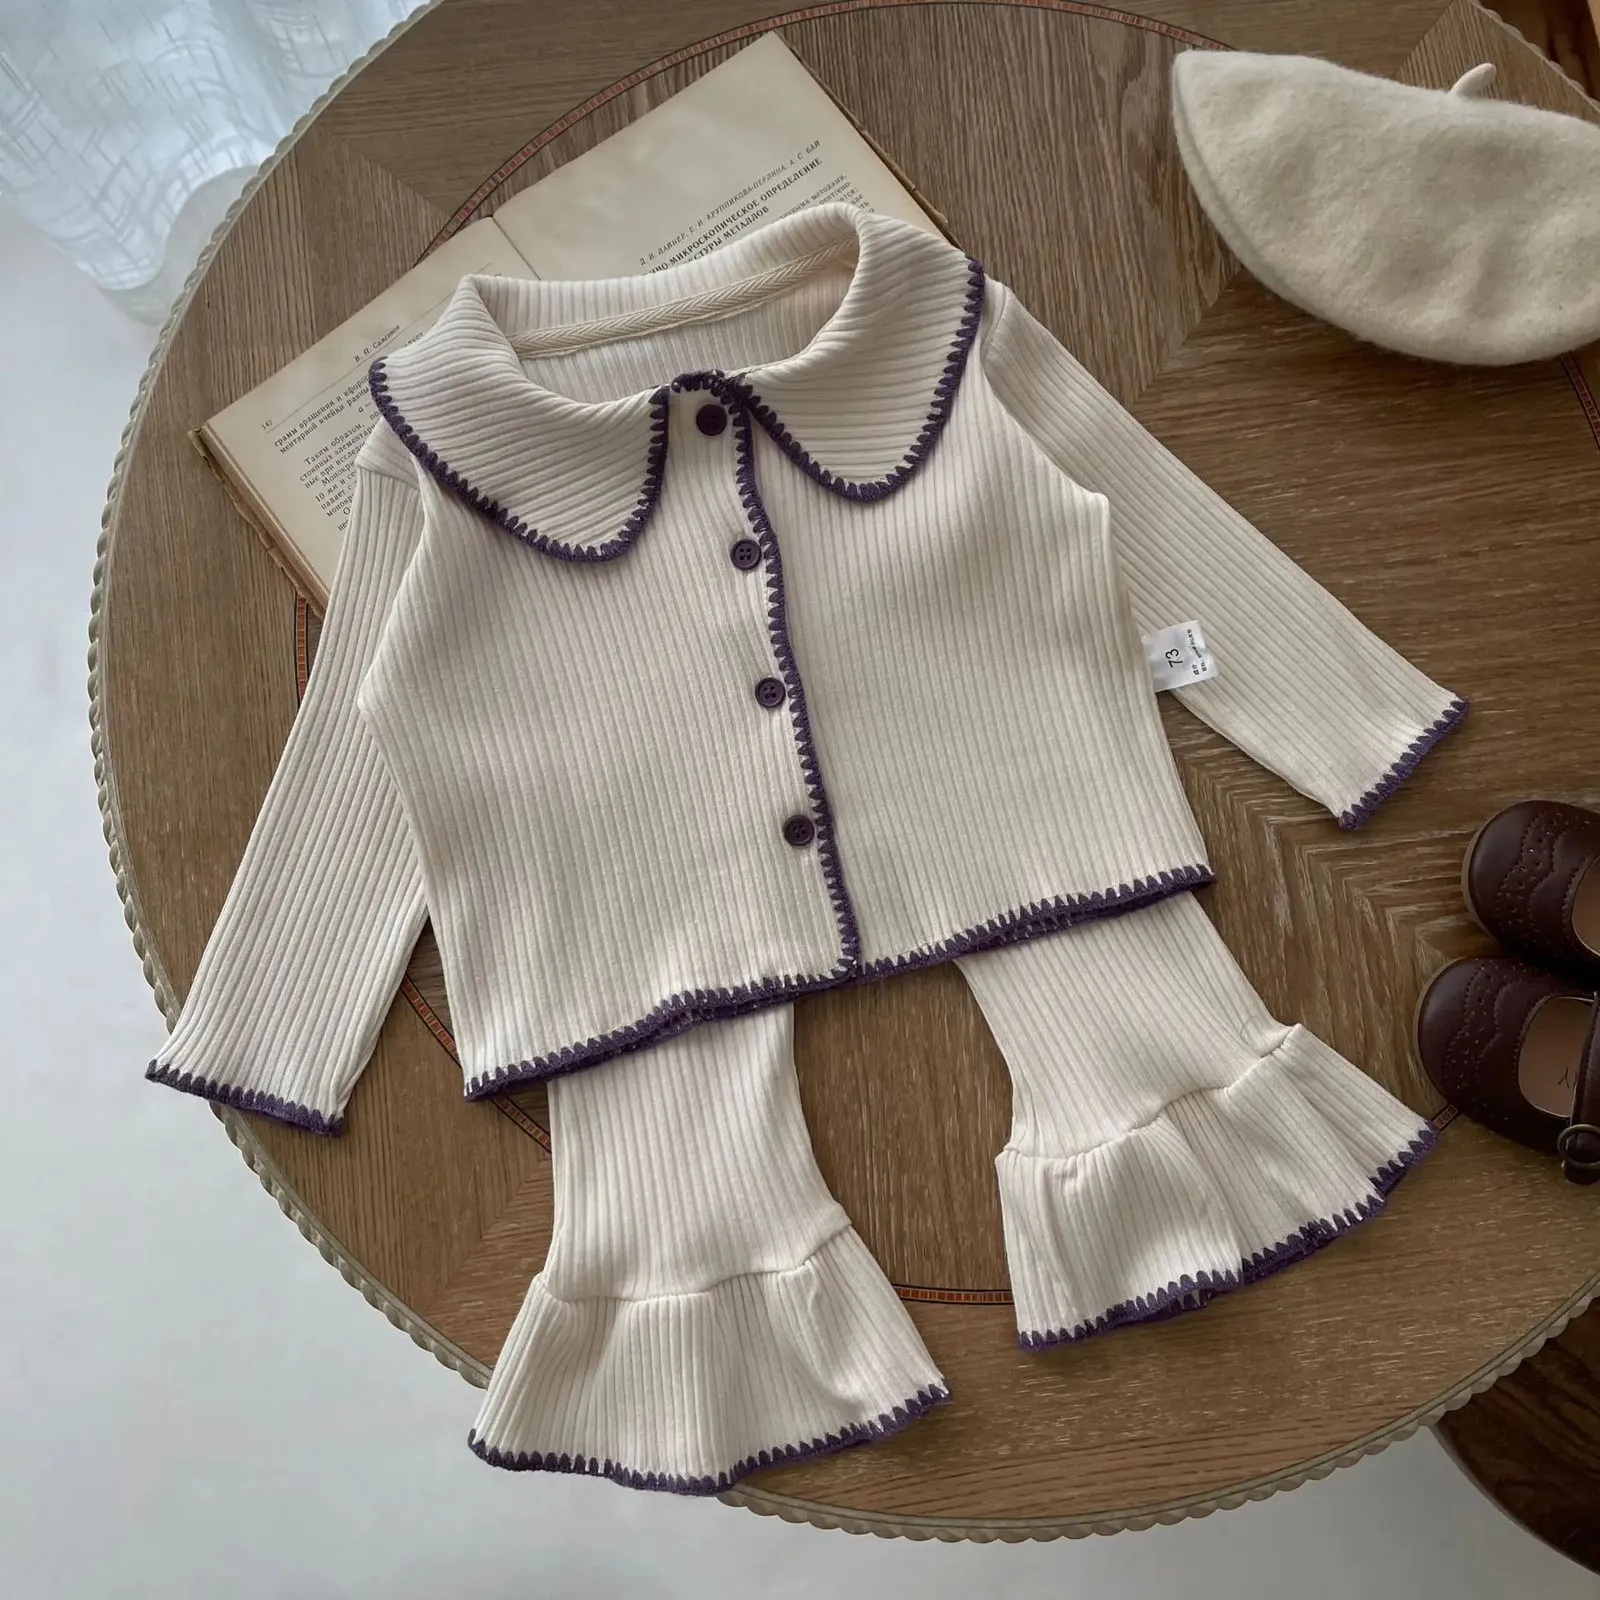 7467 Zestaw odzieży dla niemowląt Atchn Emiste Shell Dz dzianinowy kombinezon Contrast Contrast Cardigan Bell Bottoms Casual Girls Twopiece Suit 240118